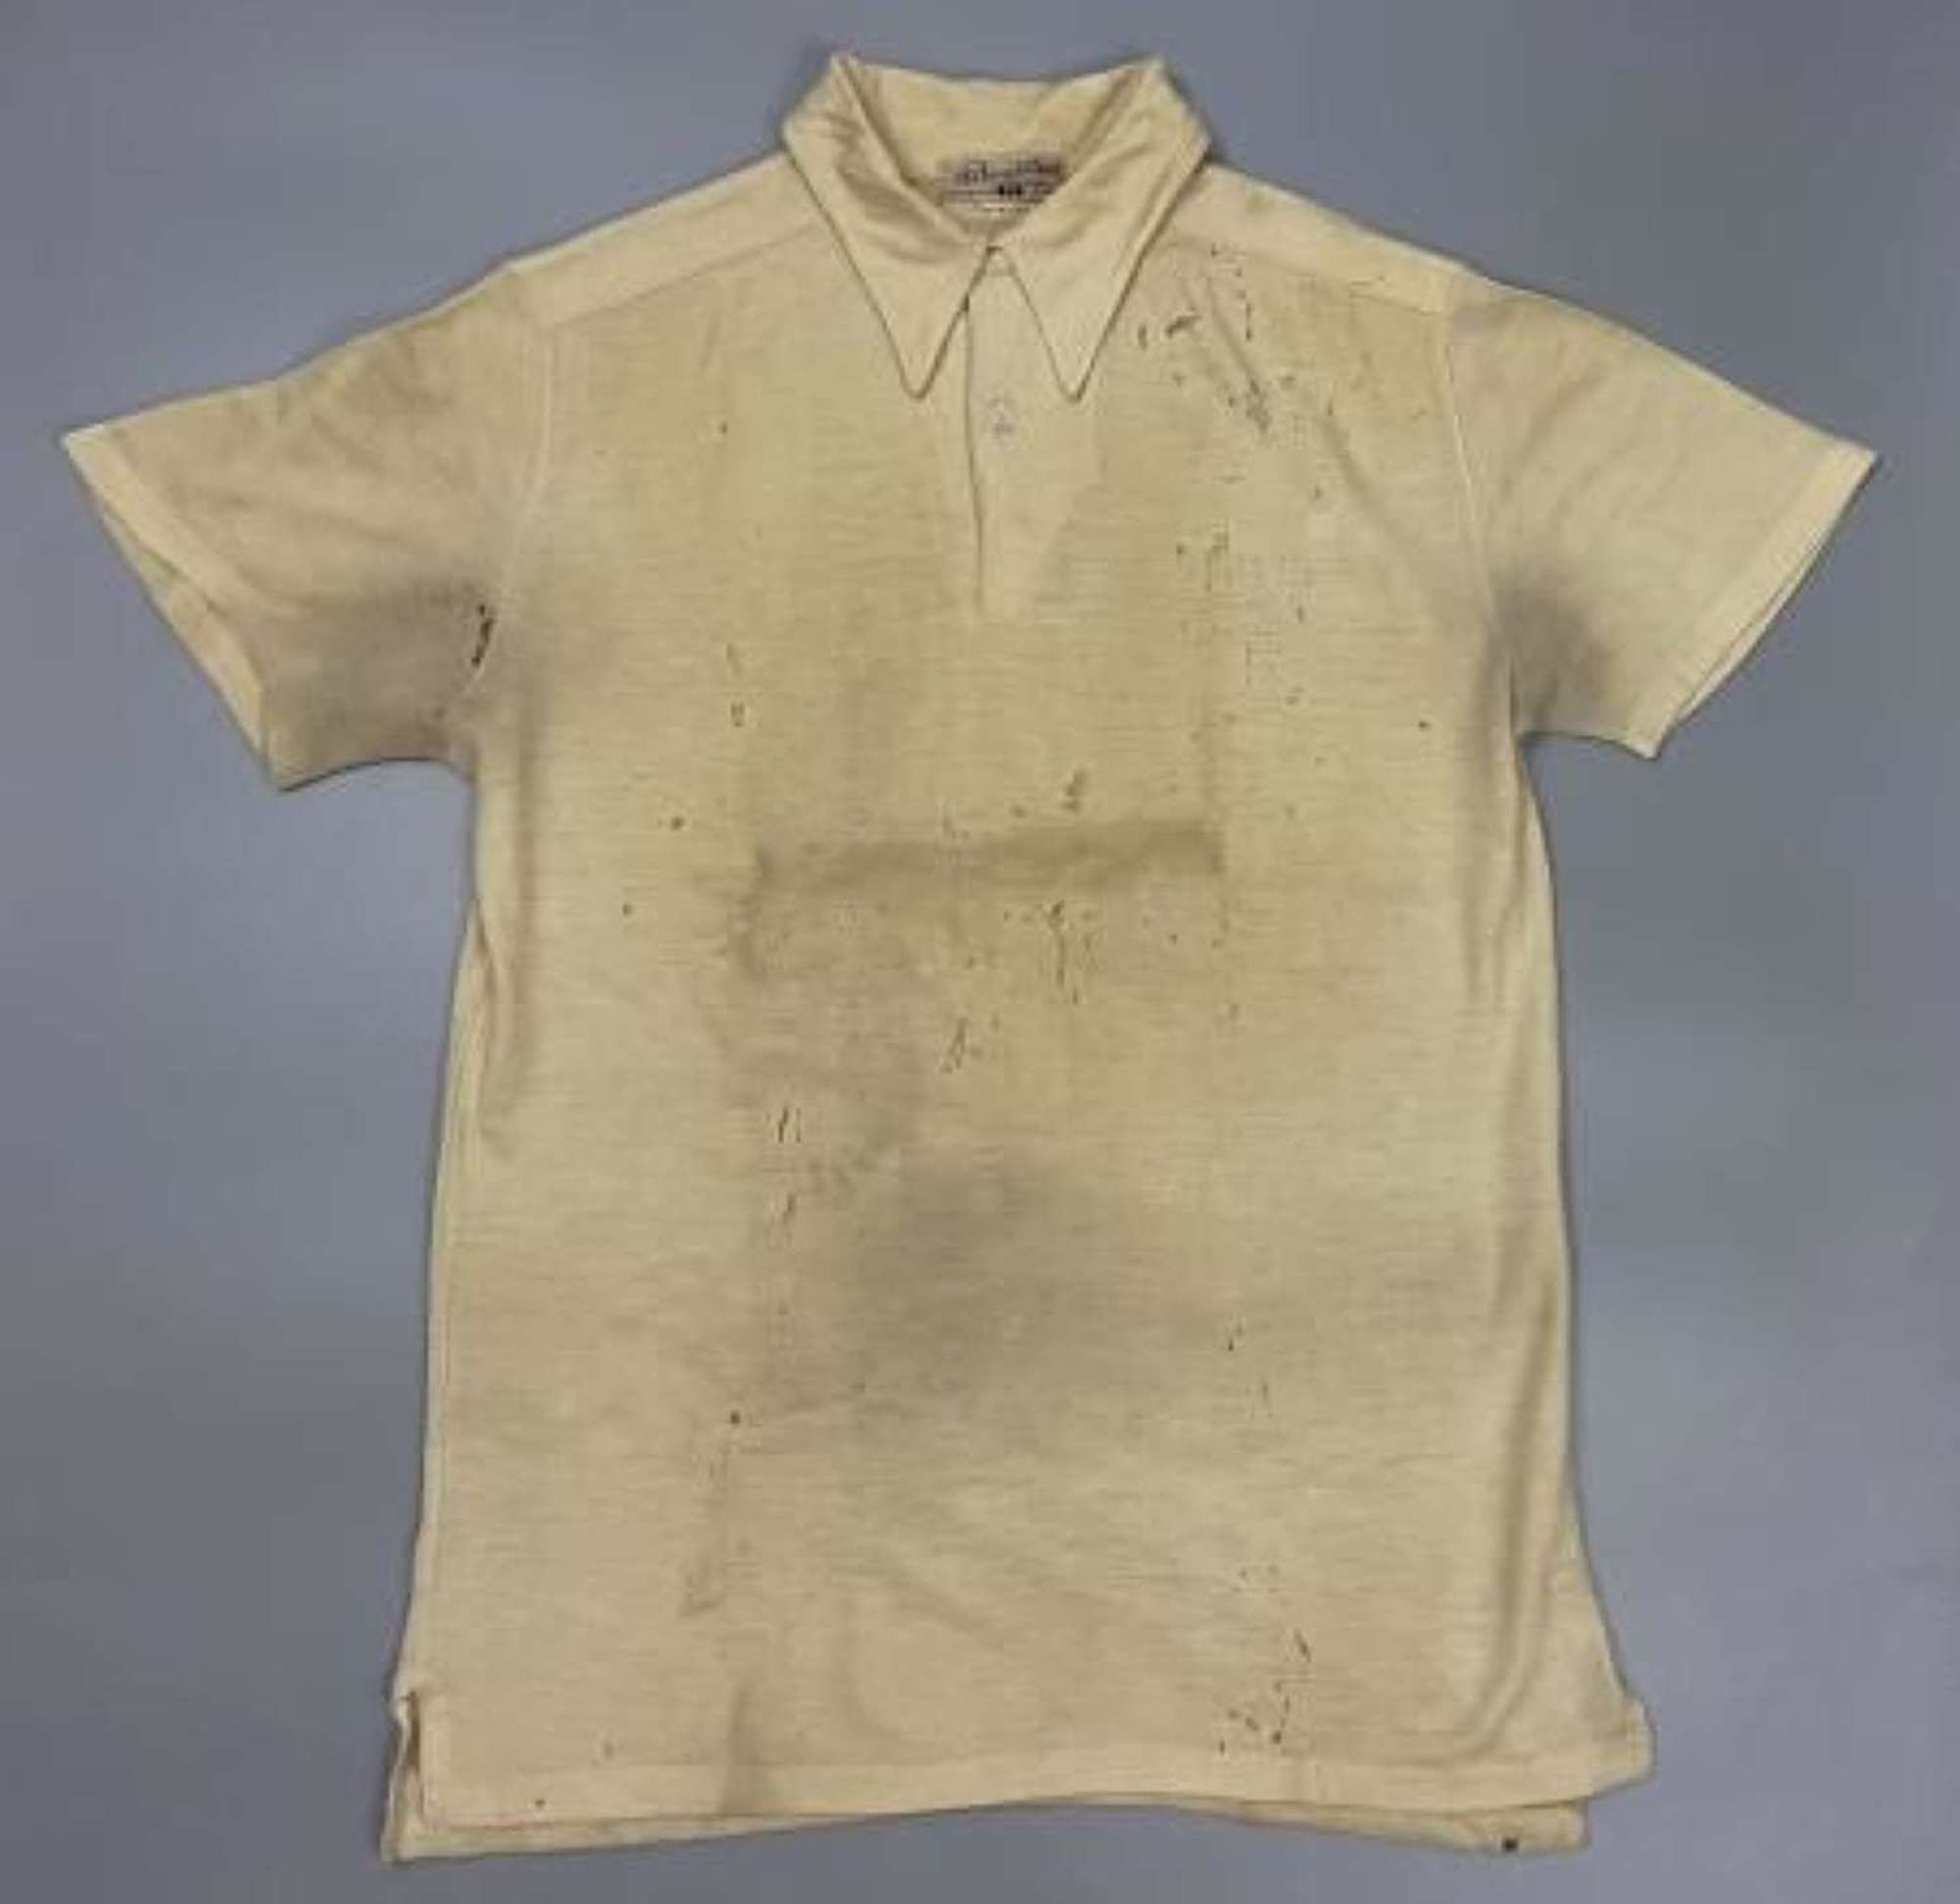 Rare original Early 1940s Men's Polo Shirt by 'R. W. Forsyth'